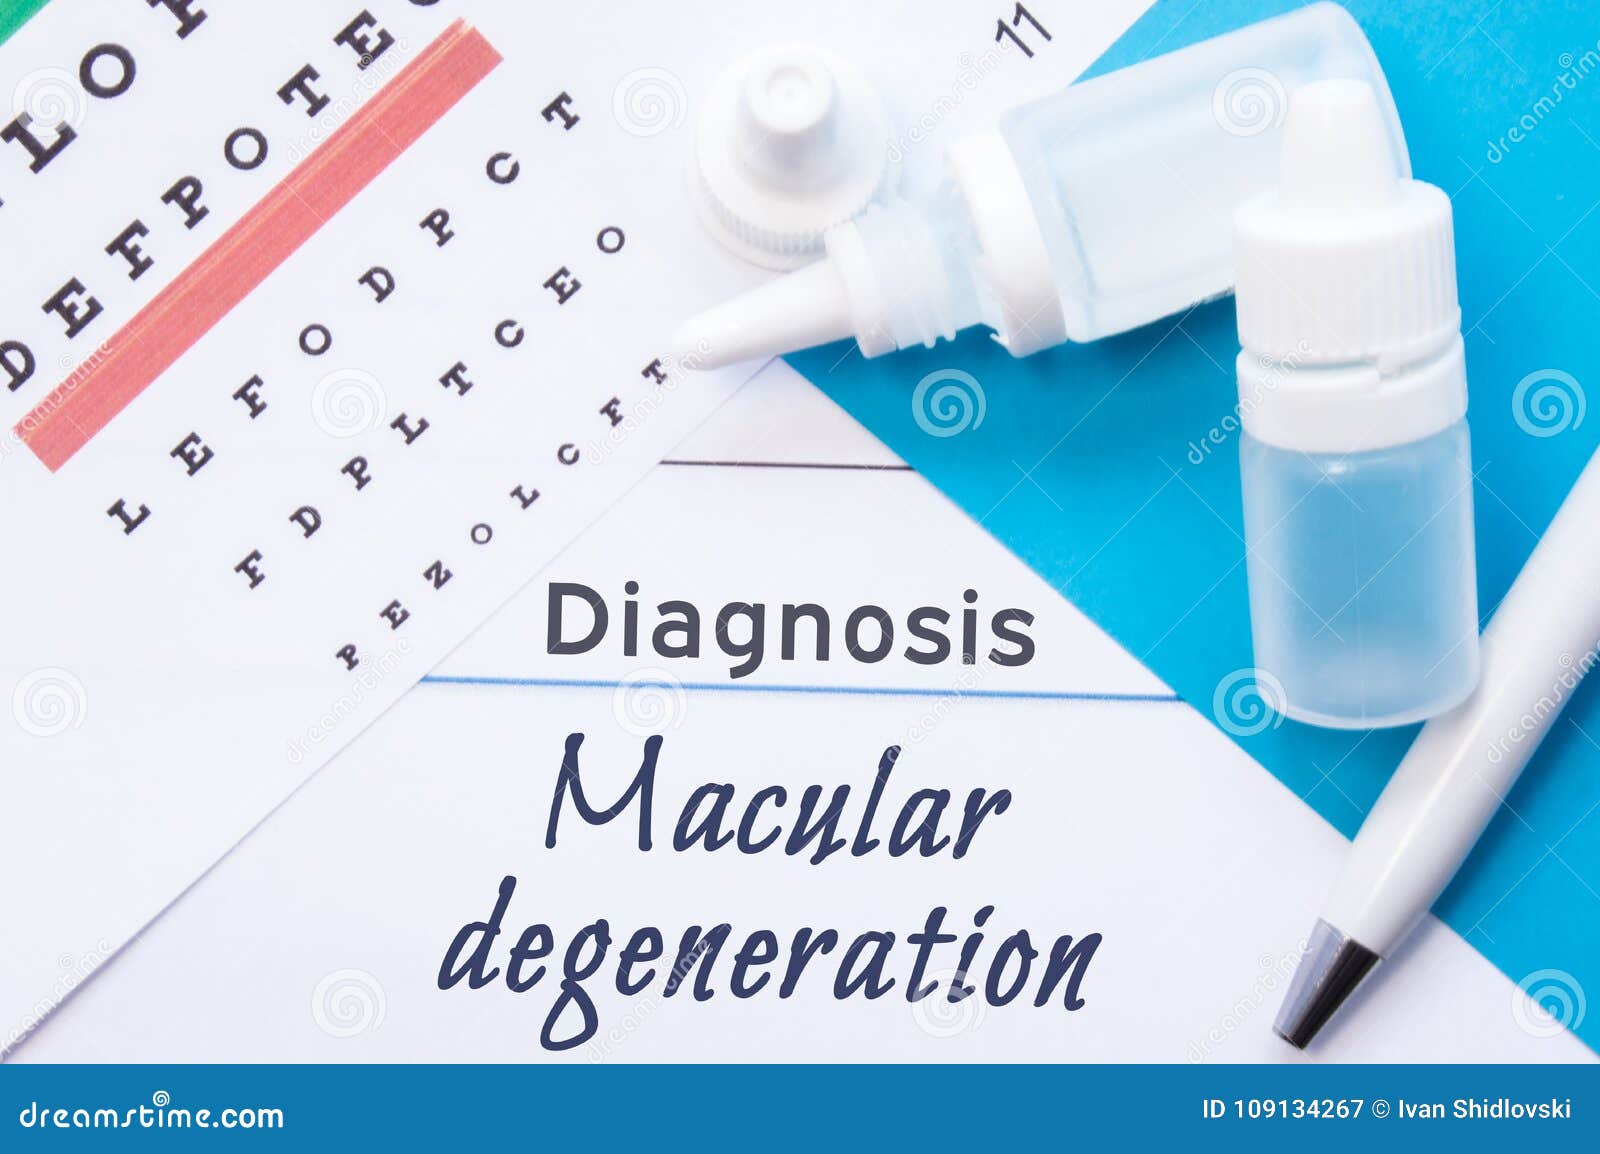 Eye Chart Test For Macular Degeneration